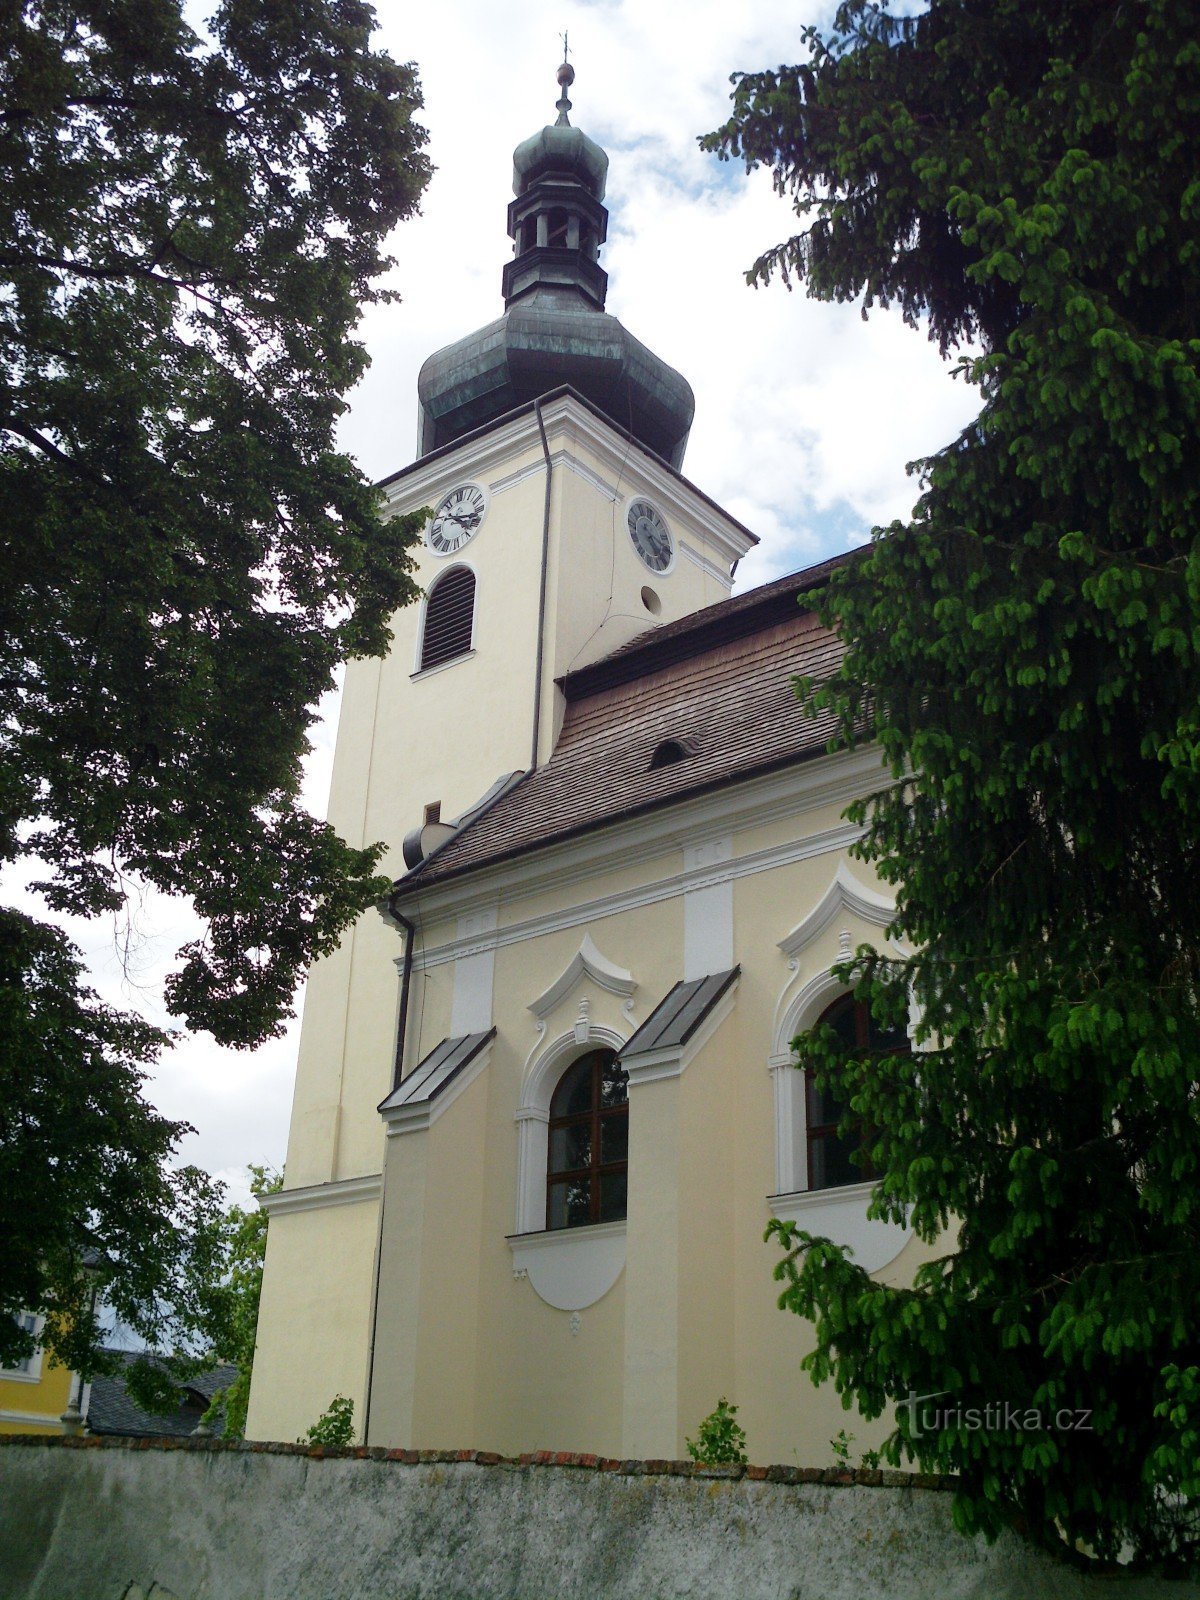 Buchlovice - Szent Szt. Márton